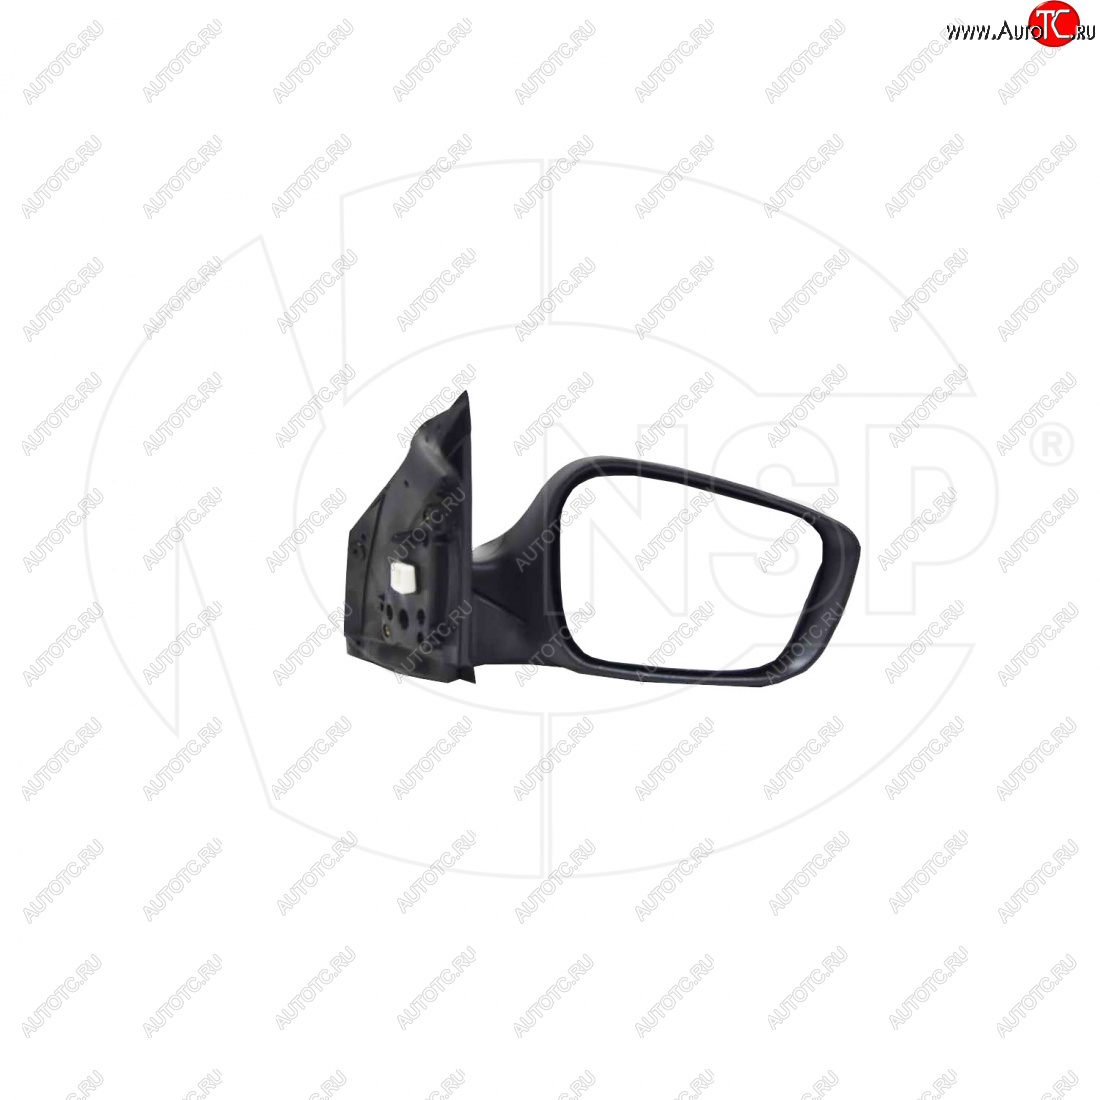 4 399 р. Зеркало зеркало заднего вида правое (регулировка, обогрев, повторитель) NSP  Hyundai Solaris ( 1 седан,  1 хэтчбек,  1 хэтчбэк) (2010-2017) (, Неокрашенное)